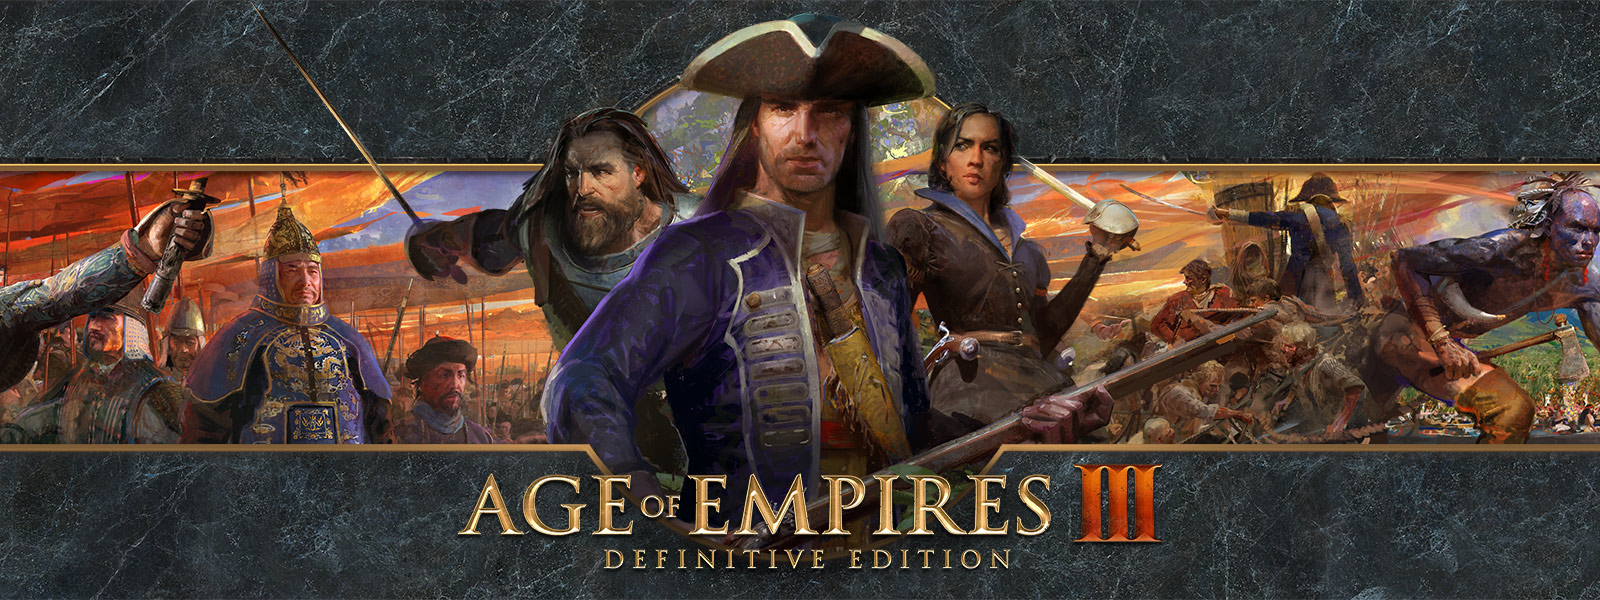 Logo Age of Empires III: Definitive Edition na pozadí znázorňujícím vojevůdce s jejich armádami